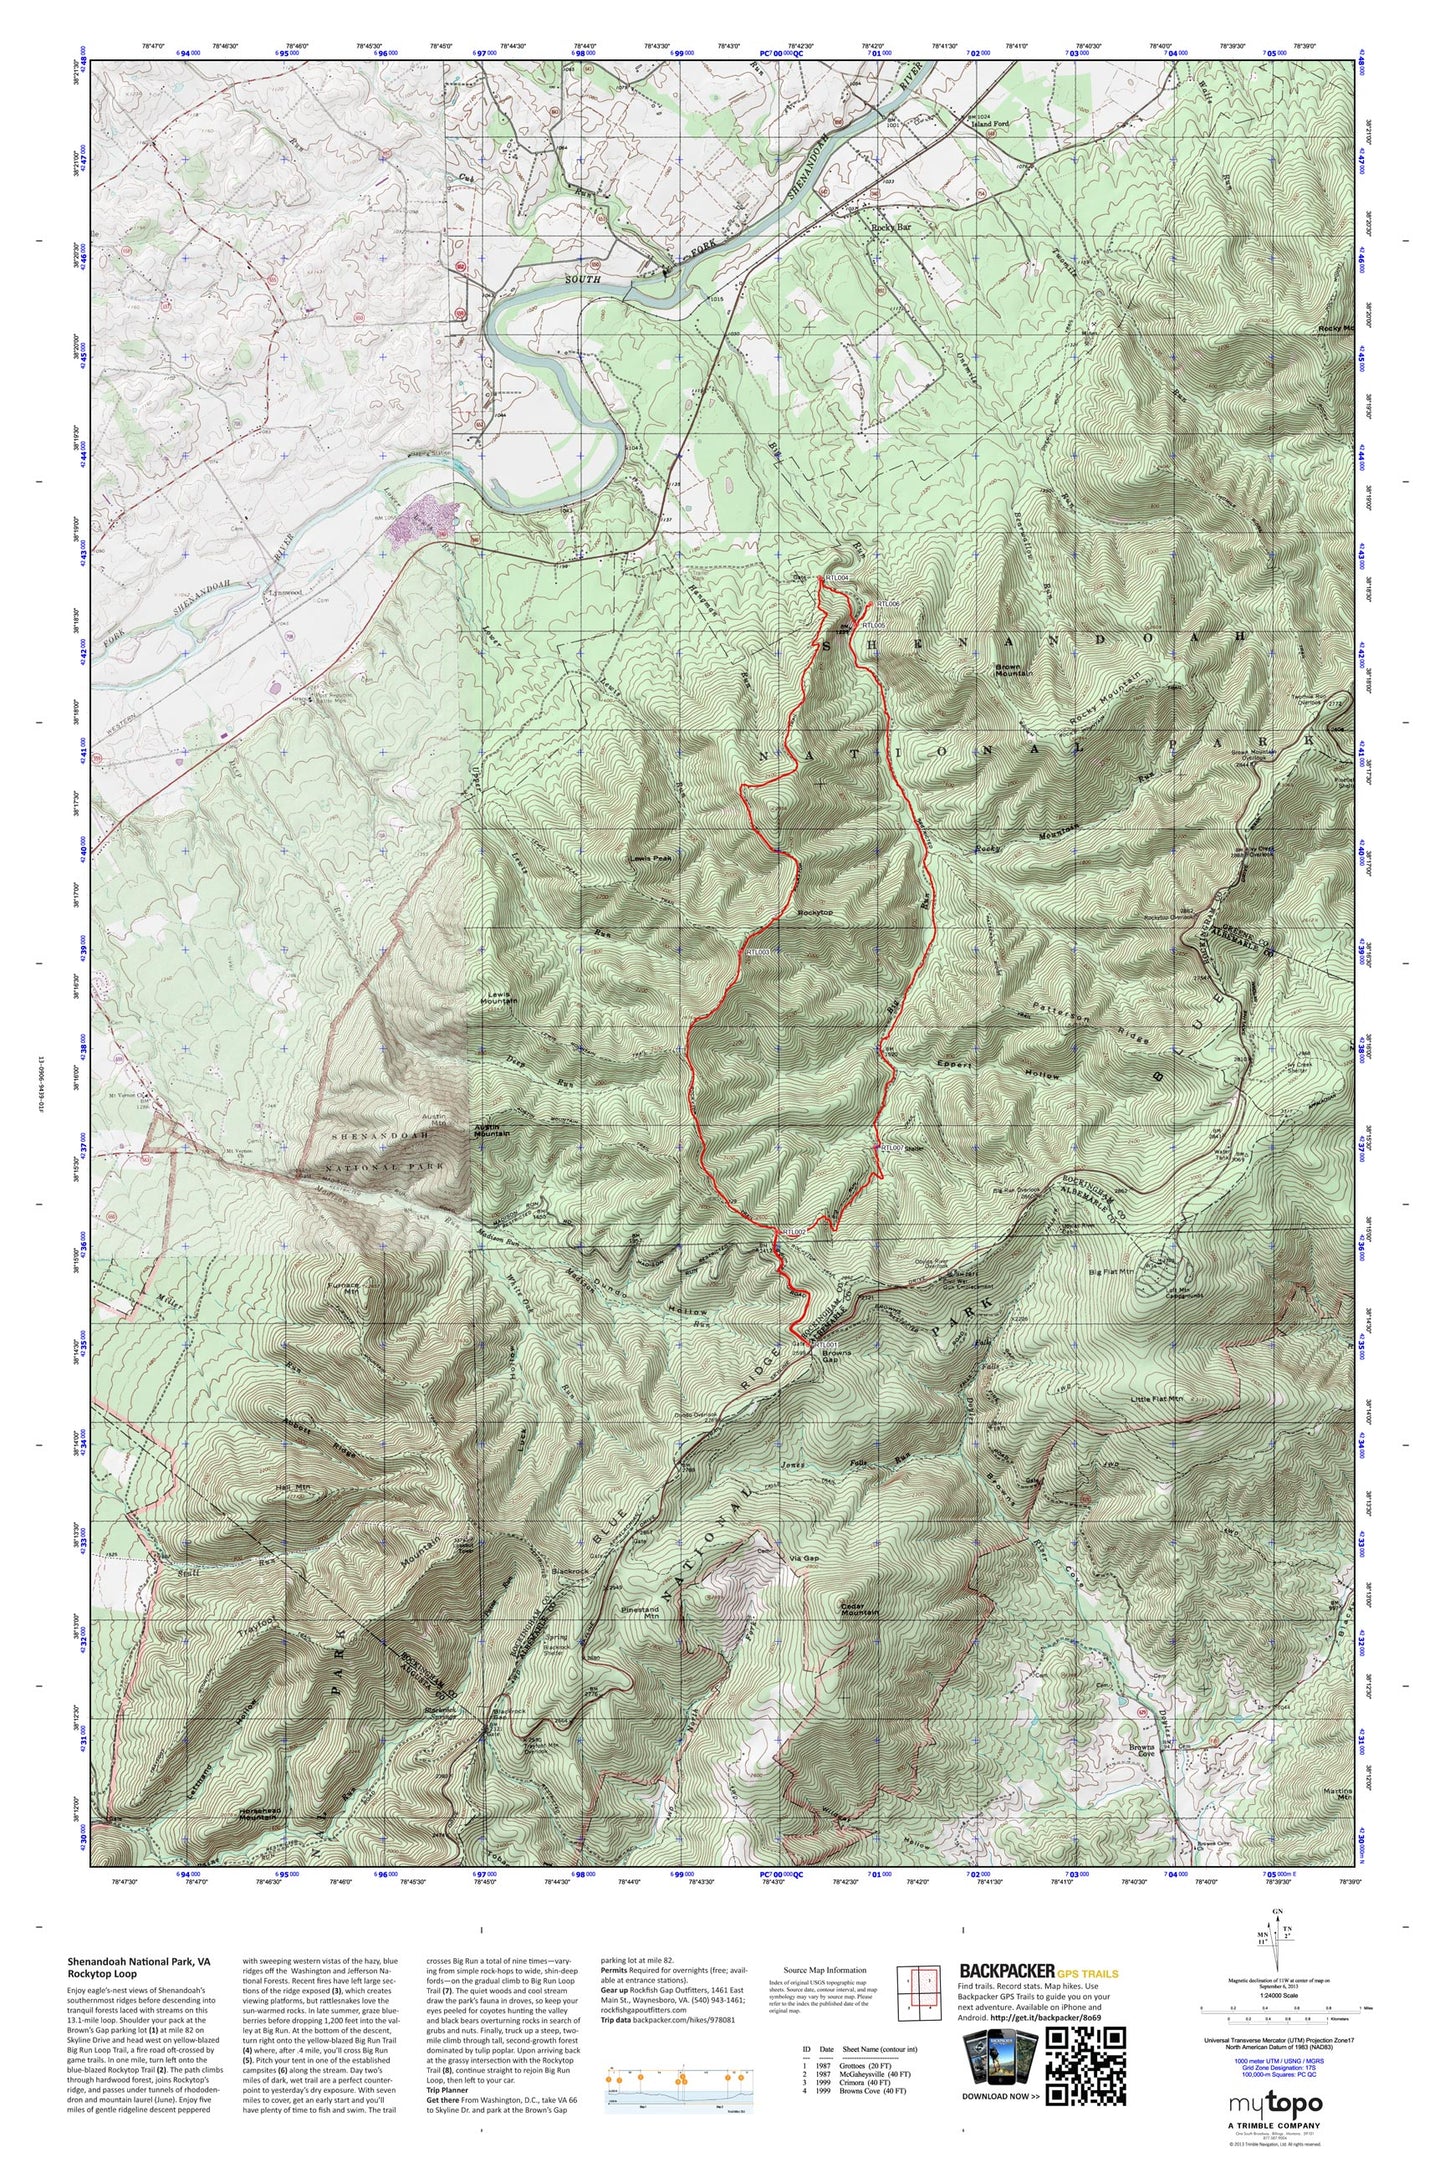 Rockytop Loop Map (Shenandoah NP, Virginia) Image